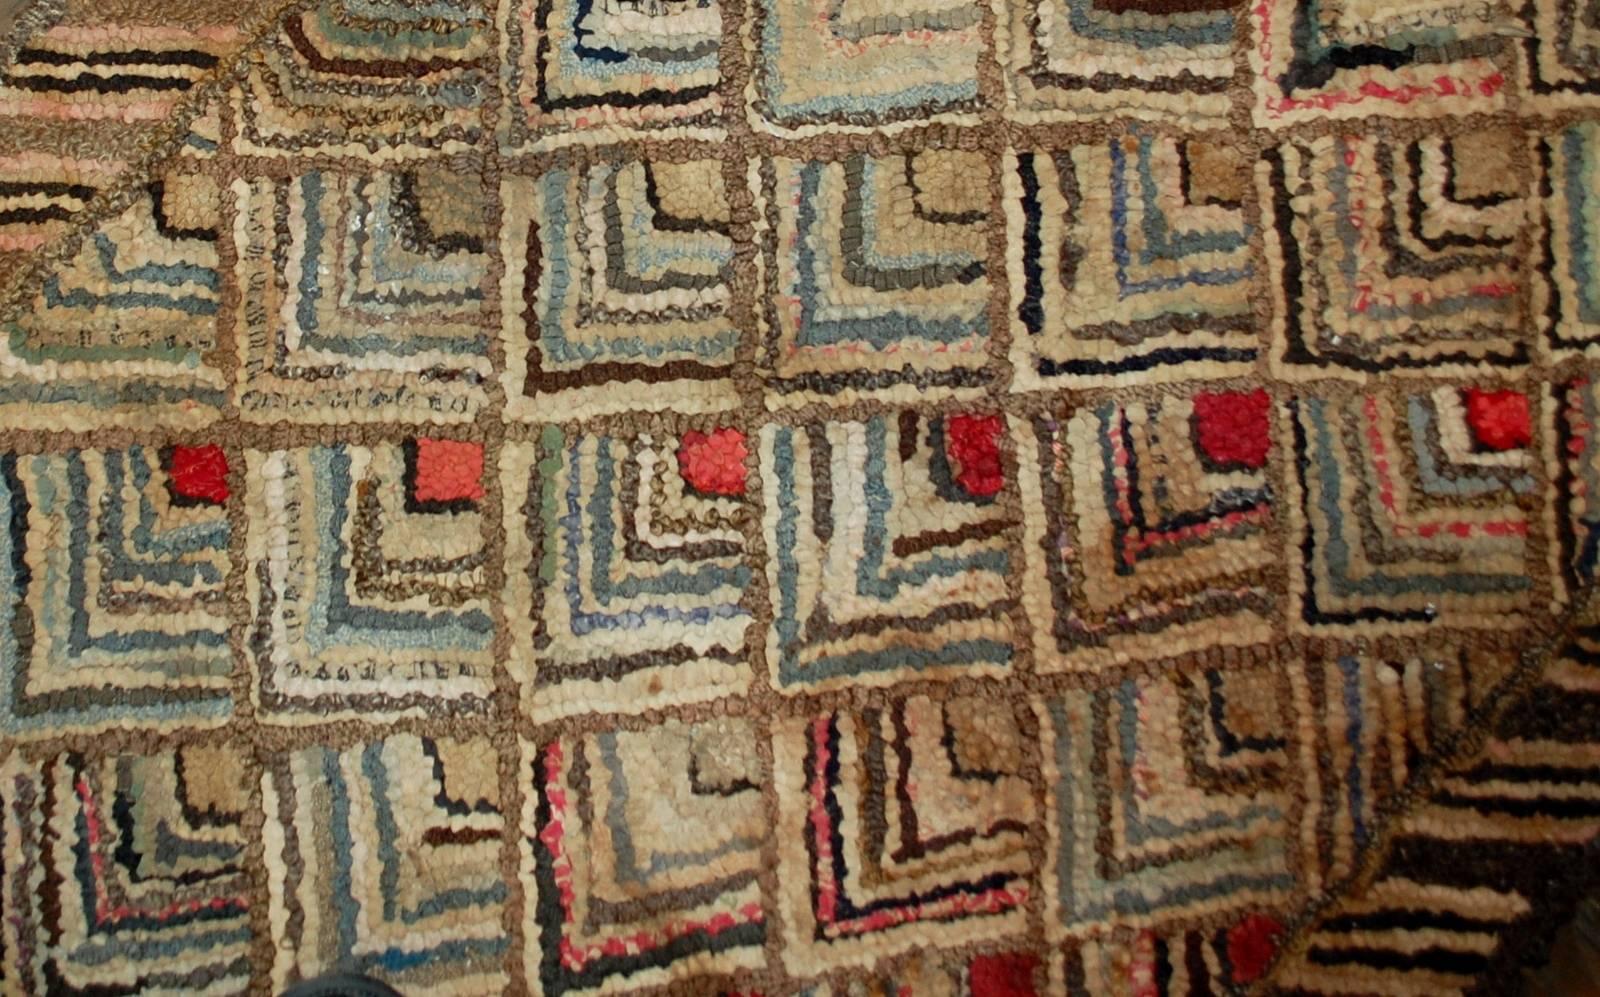 Handgefertigter antiker geometrischer amerikanischer Hakenteppich in gutem Originalzustand. Der Teppich ist mit einem sich wiederholenden pfeilförmigen Muster versehen. Es gibt eine Vielzahl von Farben: Braun, Blau, Rot, Beigetöne. Eine schöne